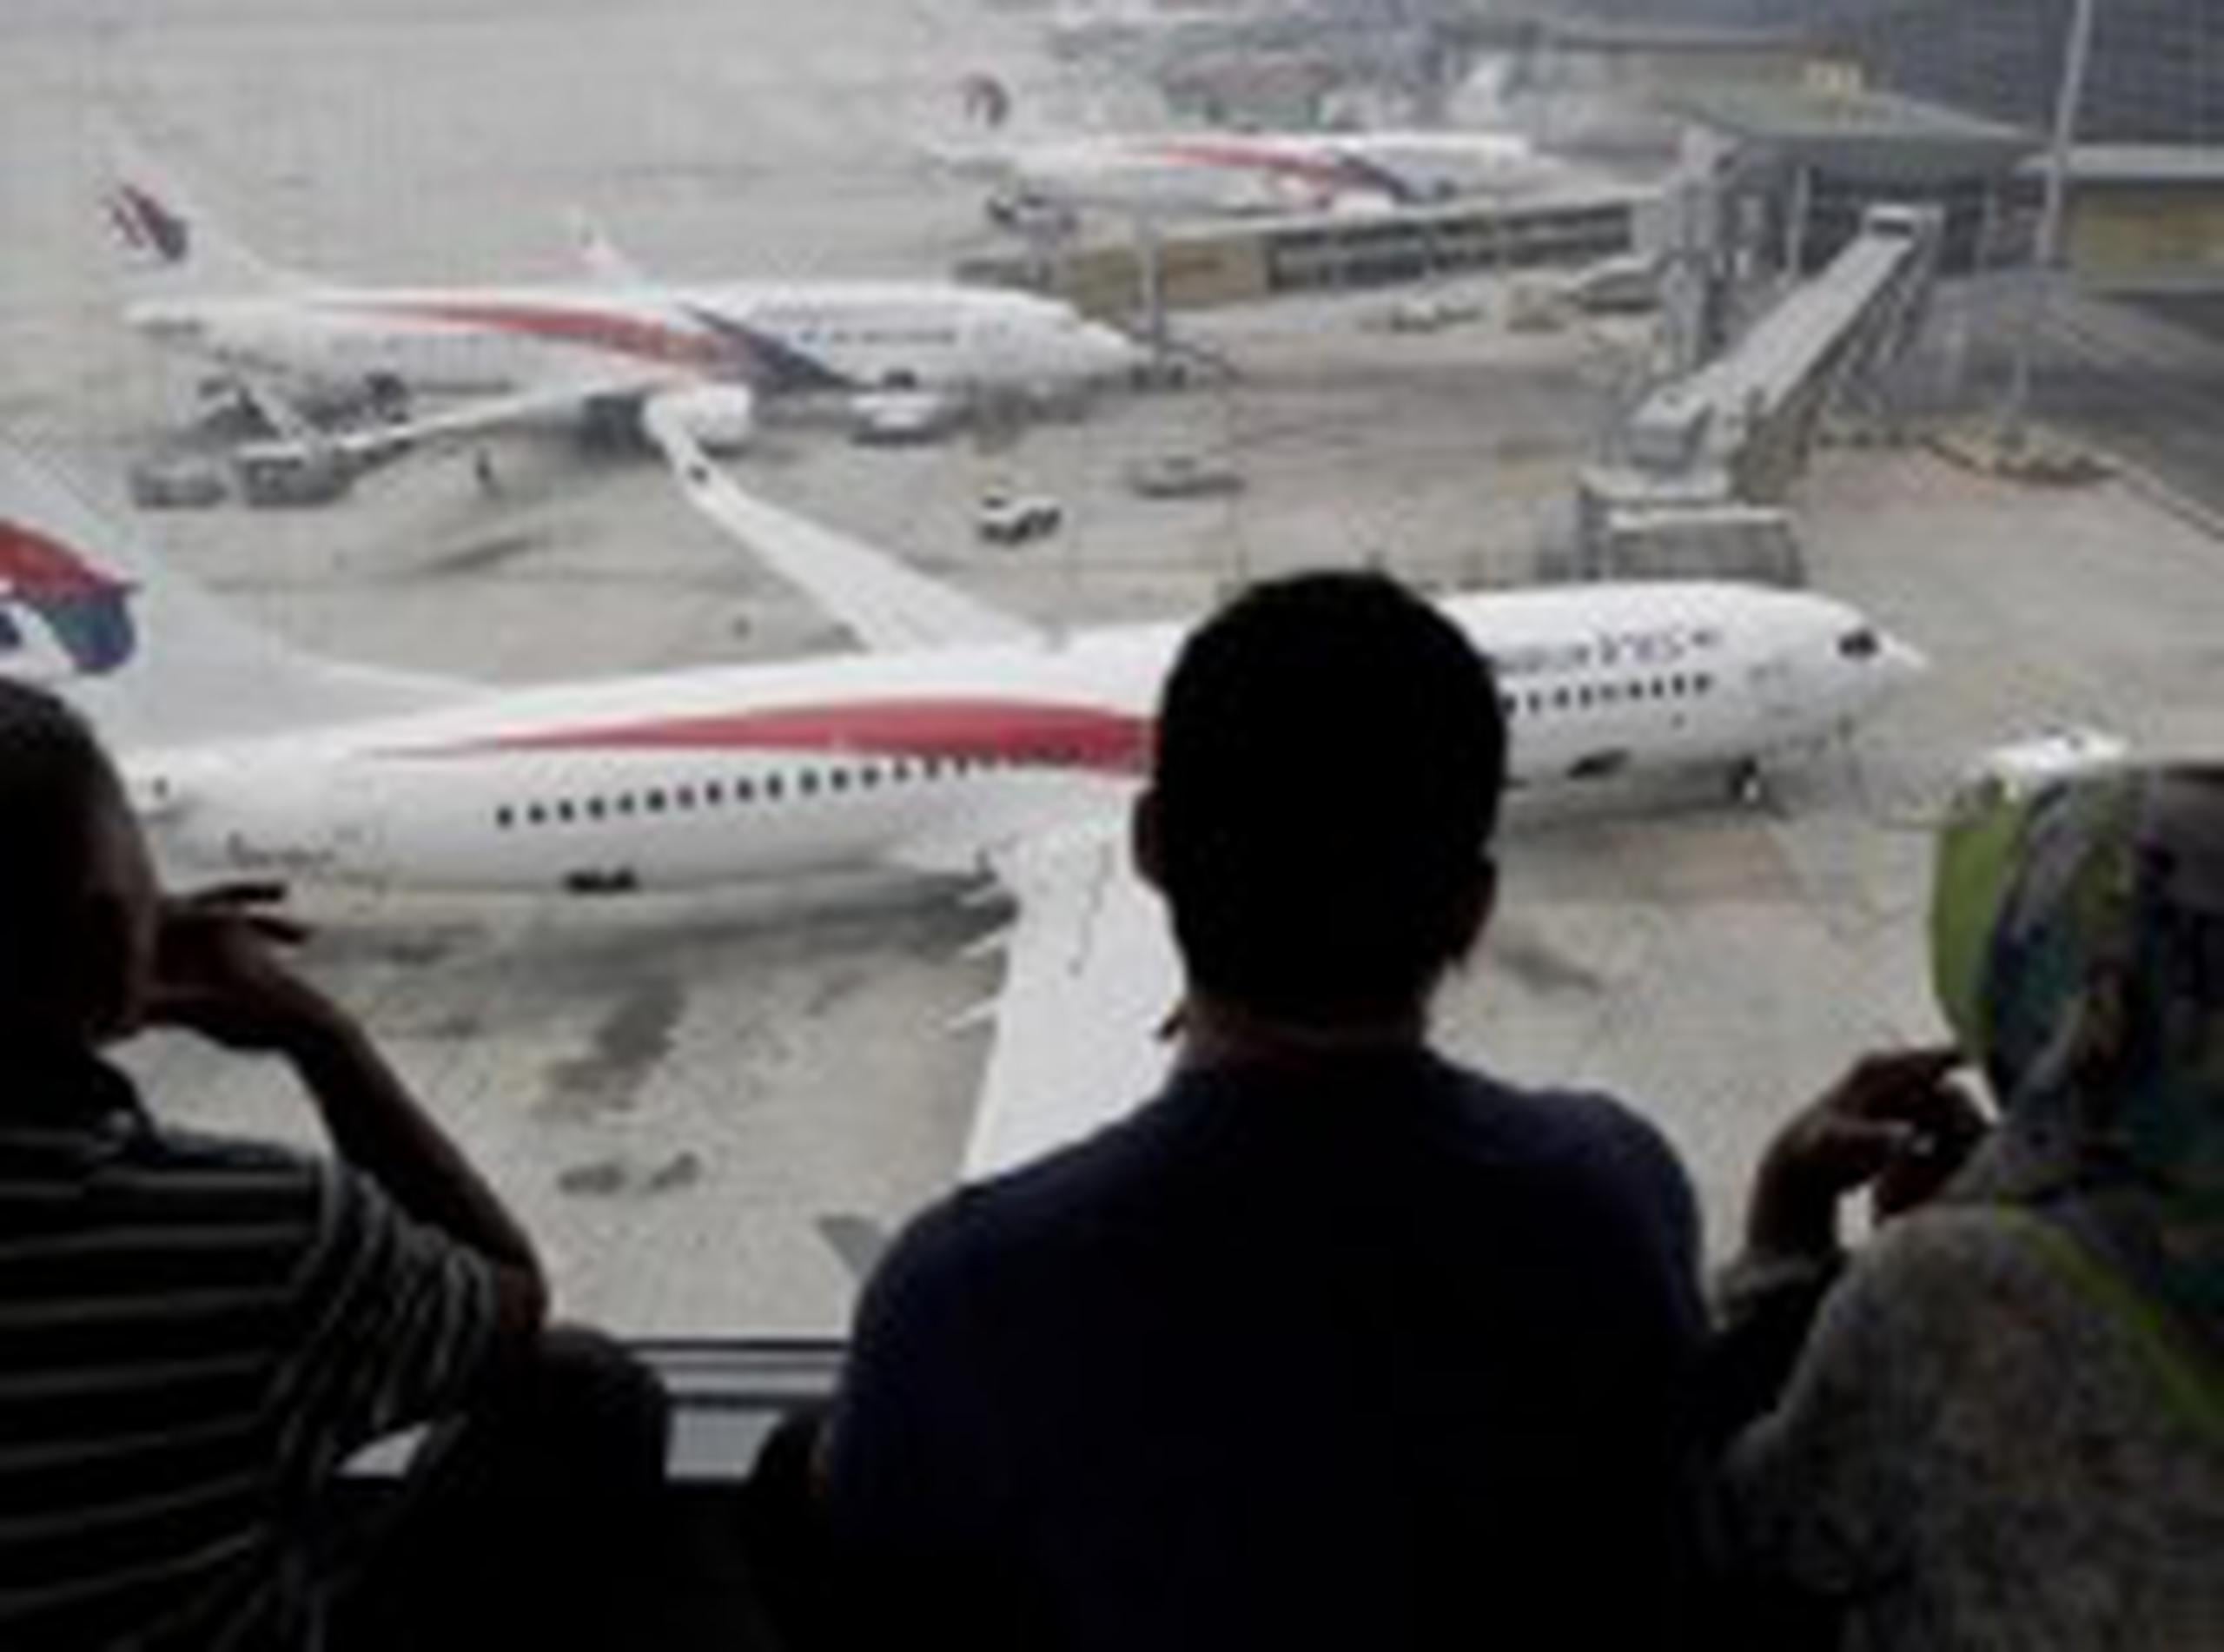 El vuelo MH370 de Malaysia Airlines despegó de Kuala Lumpur en la madrugada del 8 de marzo con 239 personas a bordo y tenía previsto aterrizar en Pekín unas seis horas más tarde. (AFP)